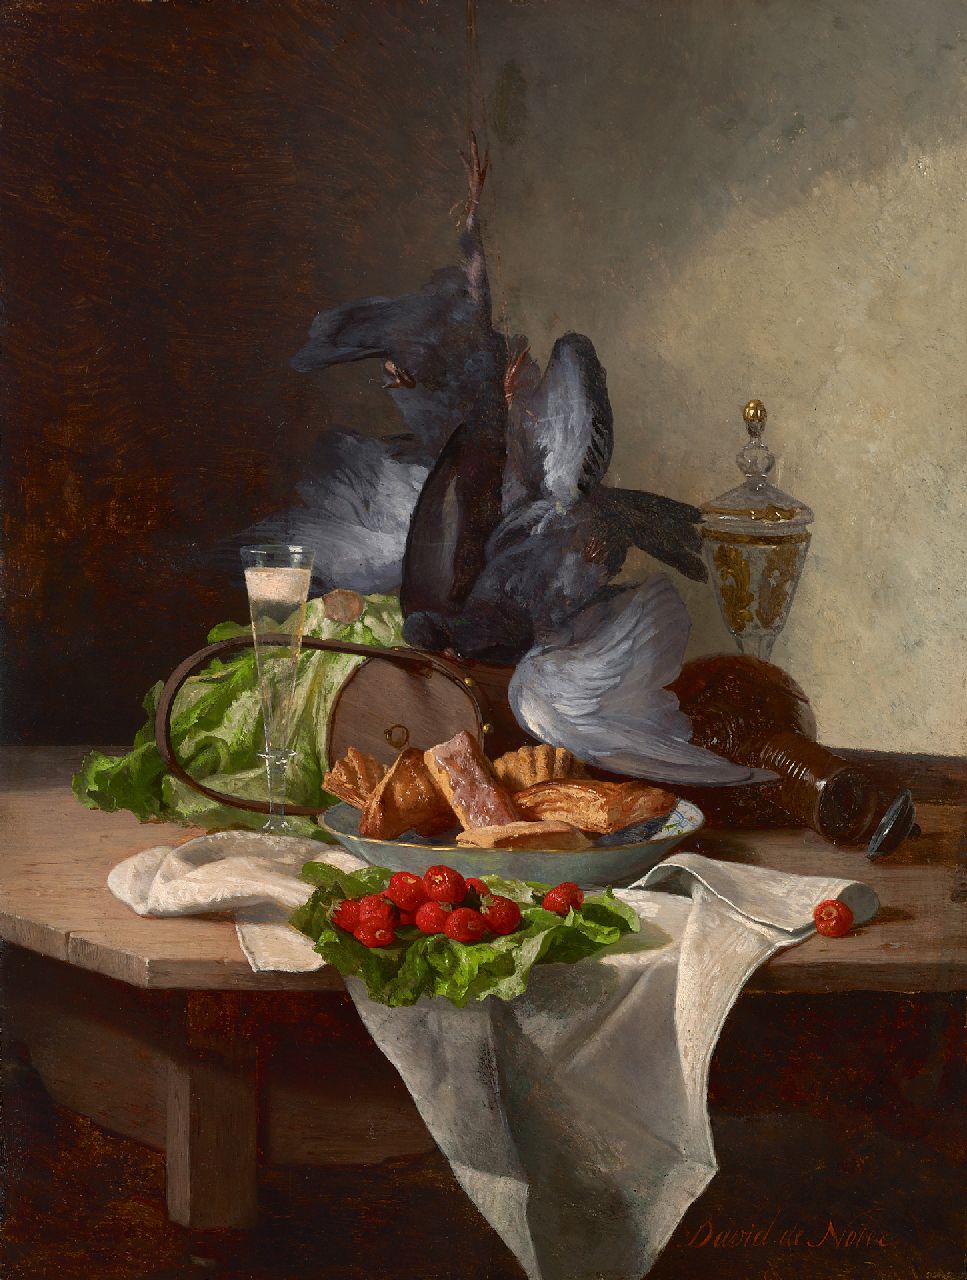 Noter D.E.J. de | 'David' Emile Joseph de Noter | Schilderijen te koop aangeboden | Stilleven met groente, pastei en wild, olieverf op paneel 30,4 x 22,8 cm, gesigneerd rechtsonder